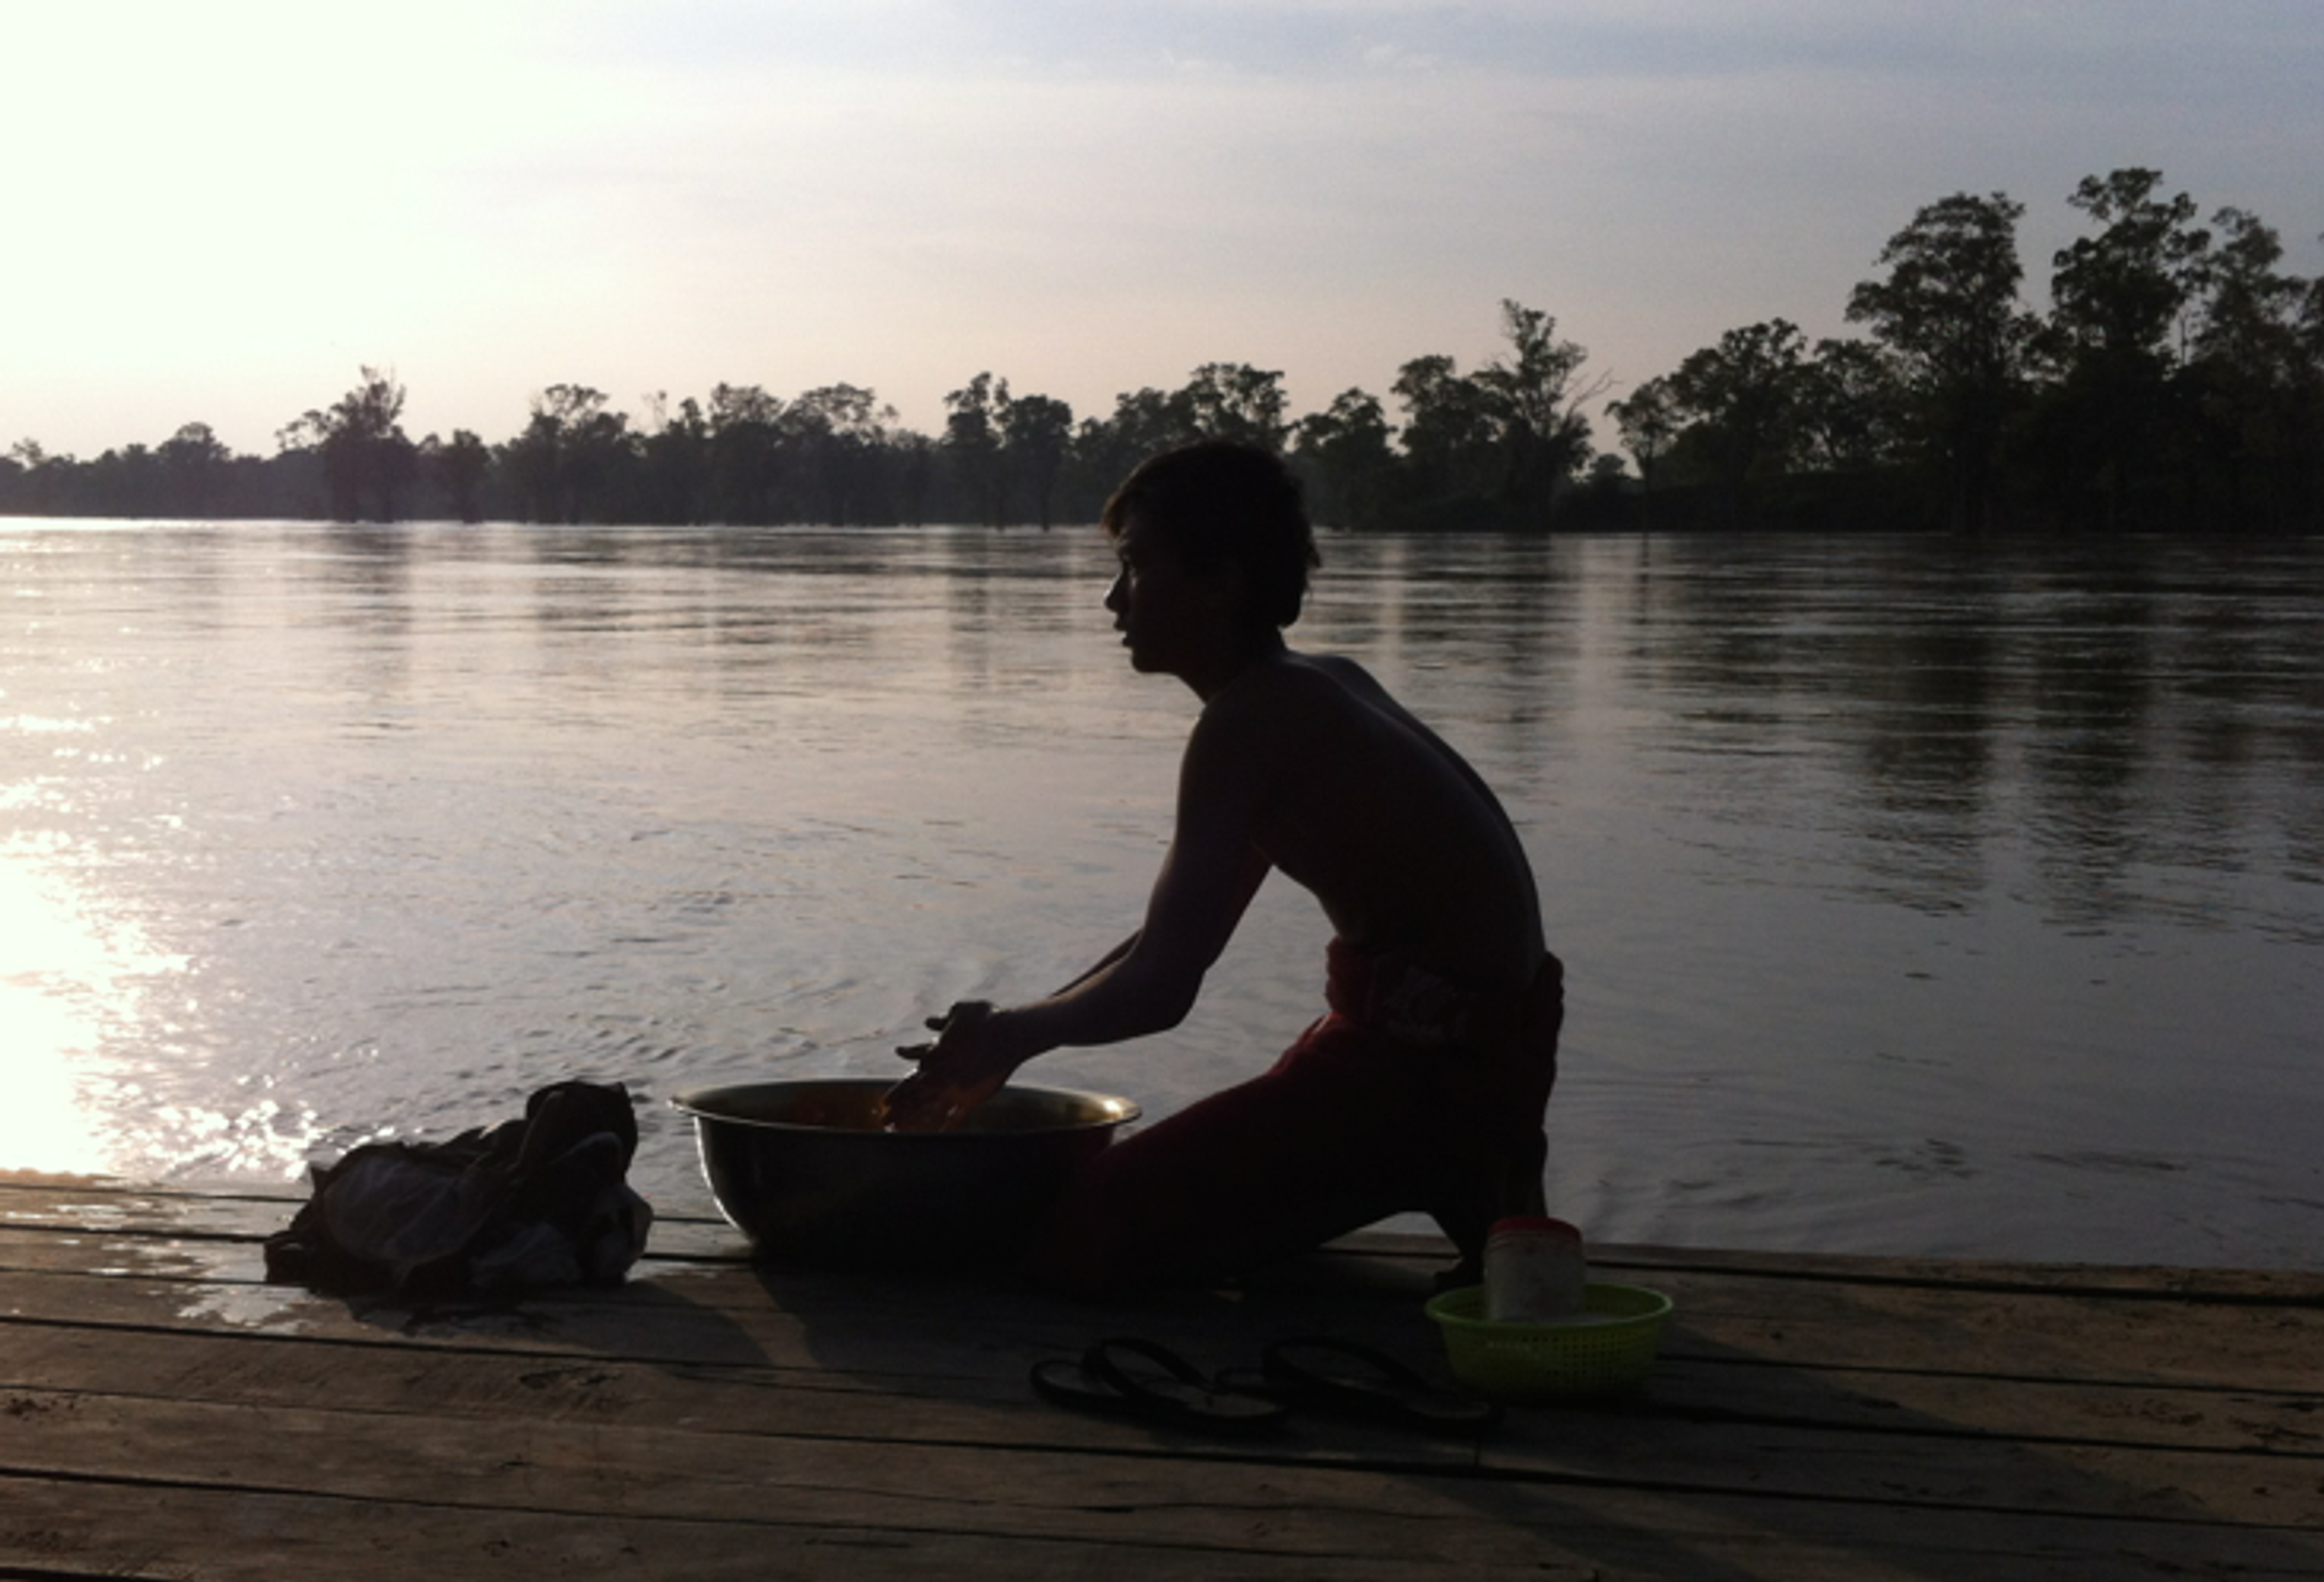 Washing on the banks of the Mekong